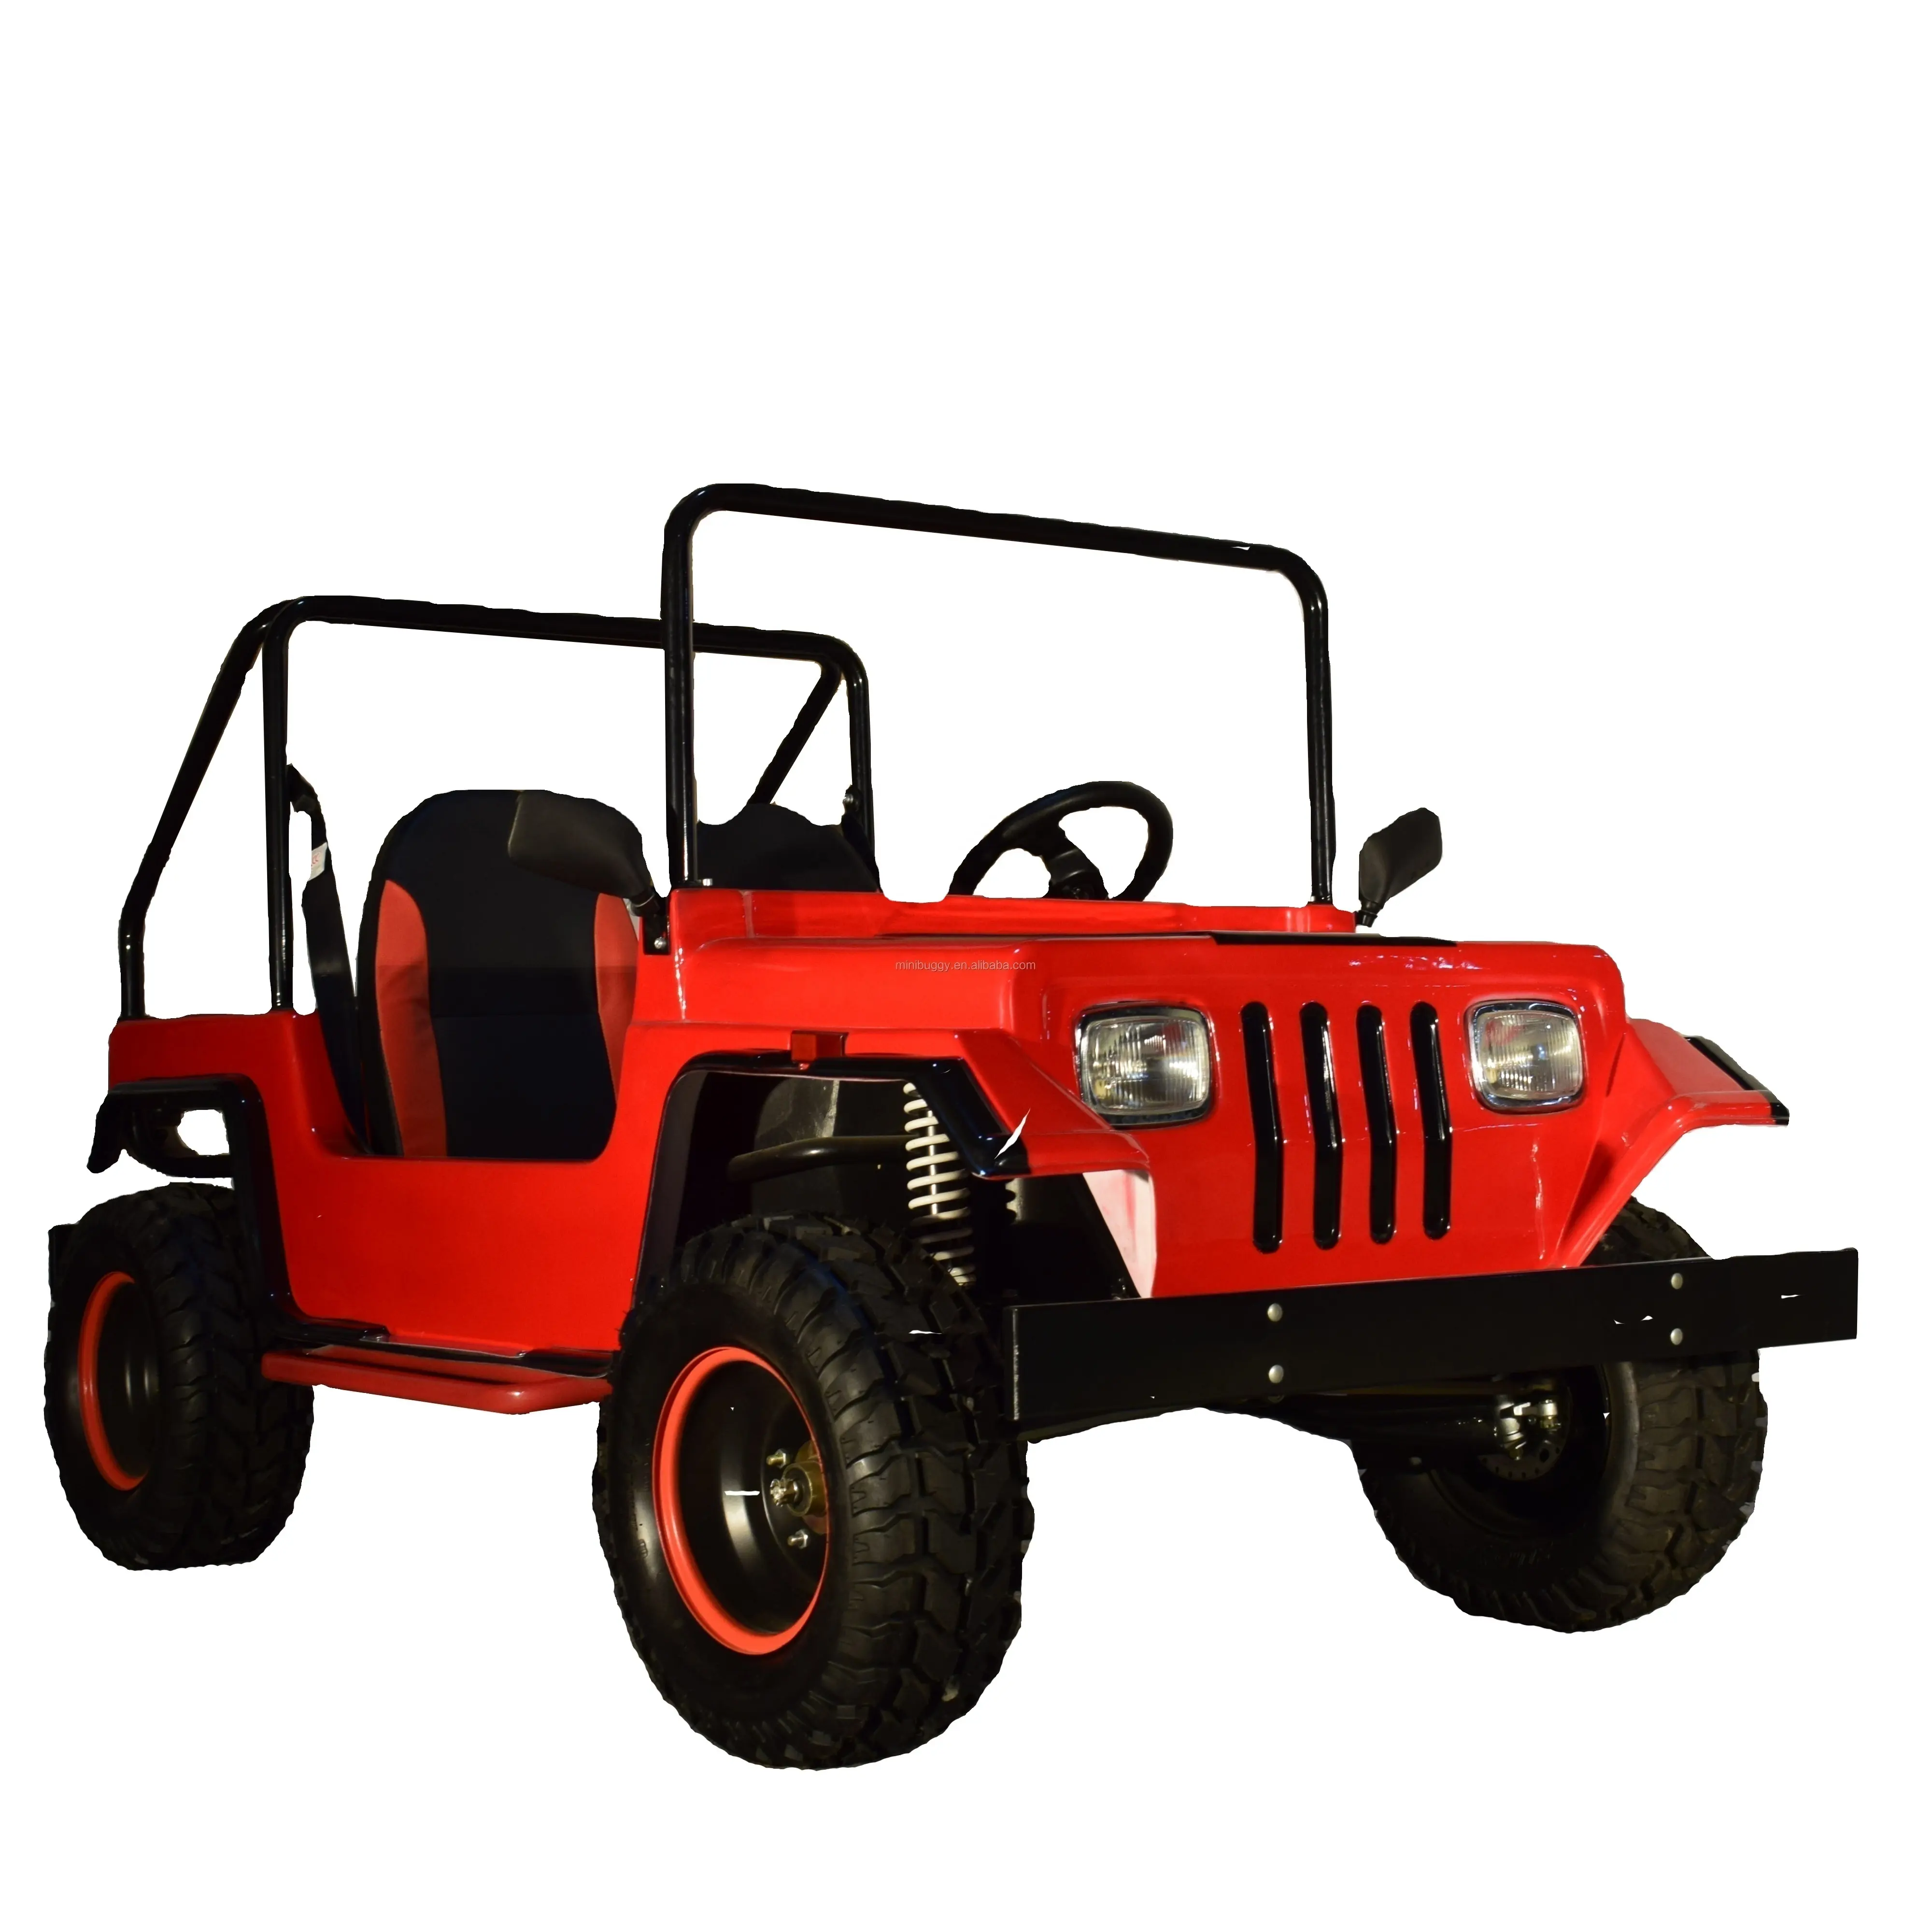 Melhor produto de design automático quatro rodas atv 200cc adulto gasolina mini jeep